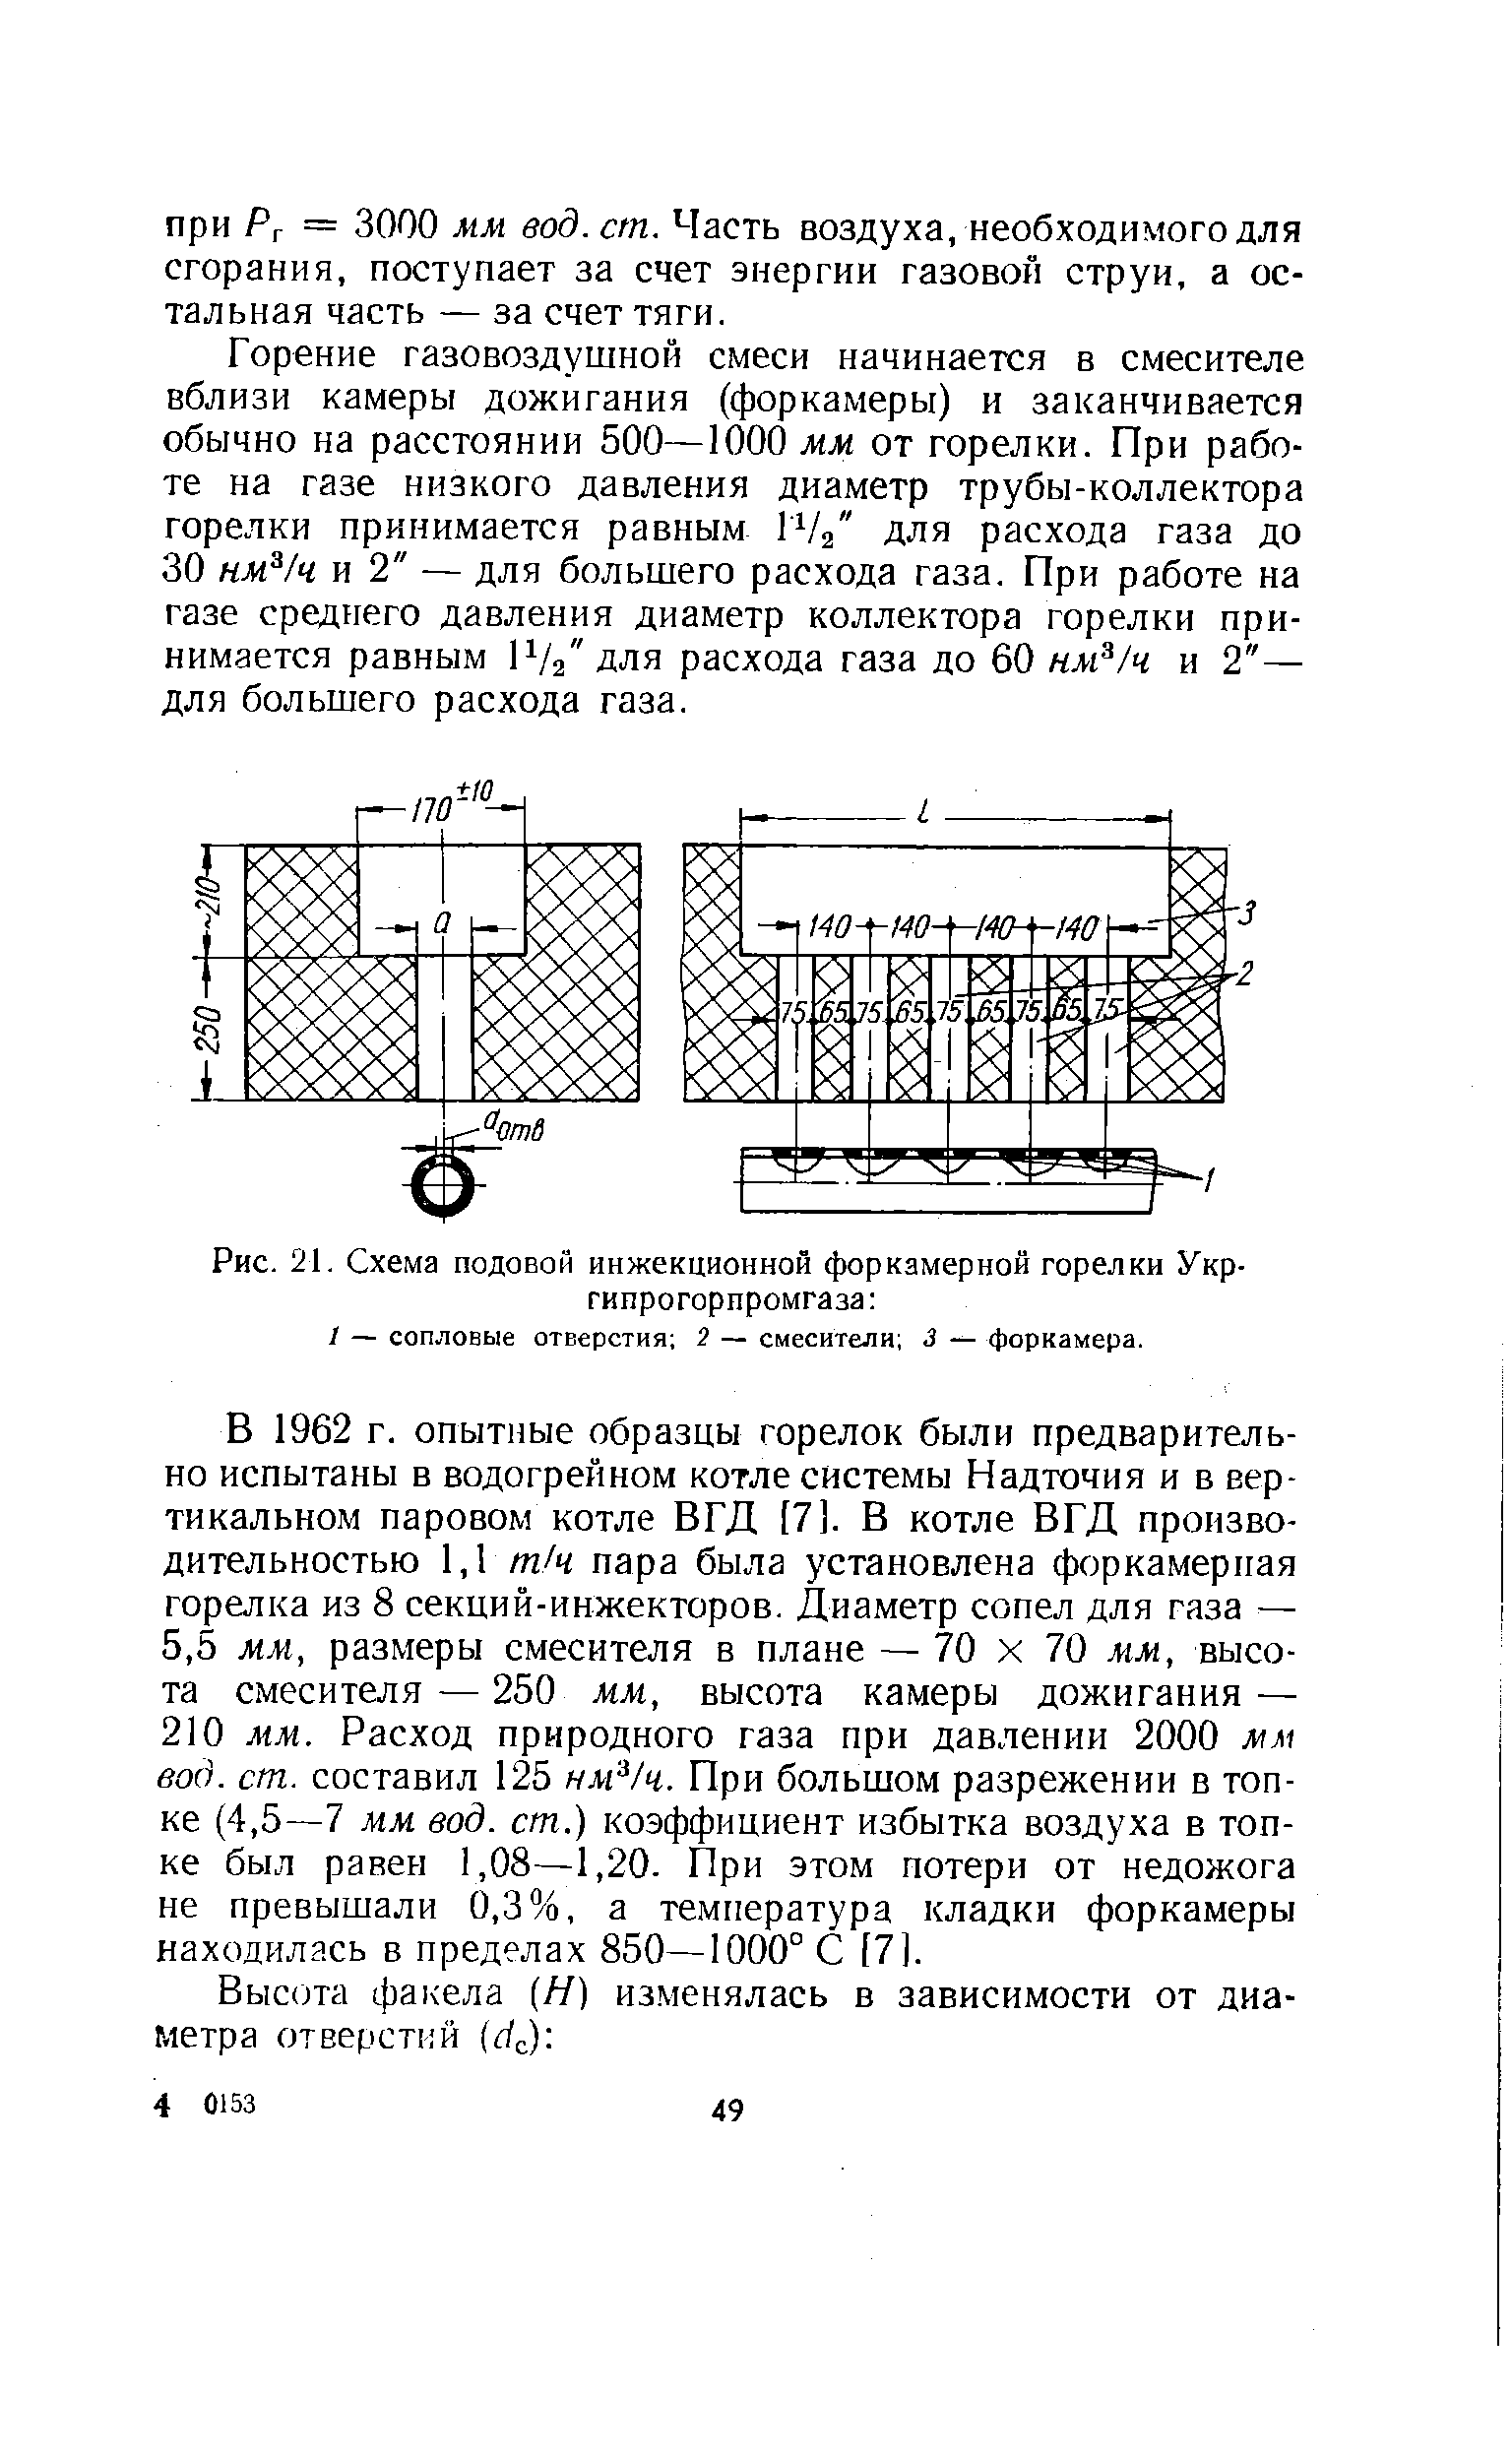 Рис. 21. Схема подовой инжекционной форкамерной горелки Укр-гипрогорпромгаза 
